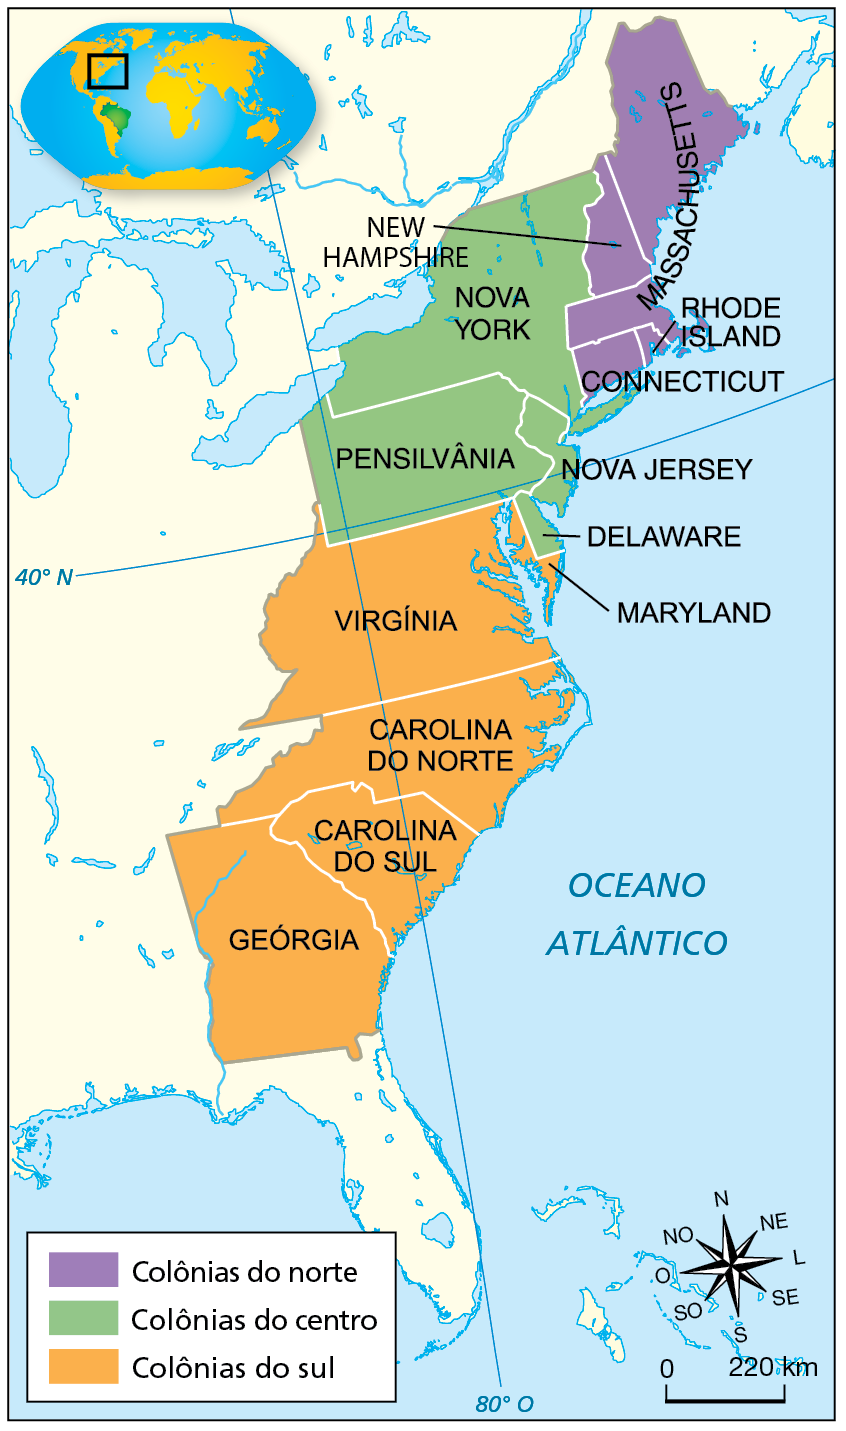 Mapa. As Treze Colônias inglesas na América do Norte. Século dezoito. Mapa representando a costa leste da América do Norte, diante do Oceano Atlântico, com destaques para áreas em três cores. Em roxo, colônias do norte: Connecticut, Rhode Island, Massachusetts e  New Hampshire.
Em verde, colônias do centro: Nova York, Pensilvânia, Nova Jersey e Delaware. 
Em laranja, colônias do sul: Virgínia, Maryland, Carolina do Norte, Carolina do Sul e Geórgia.  
No canto inferior direito, rosa dos ventos e escala de 0 a 220 quilômetros.